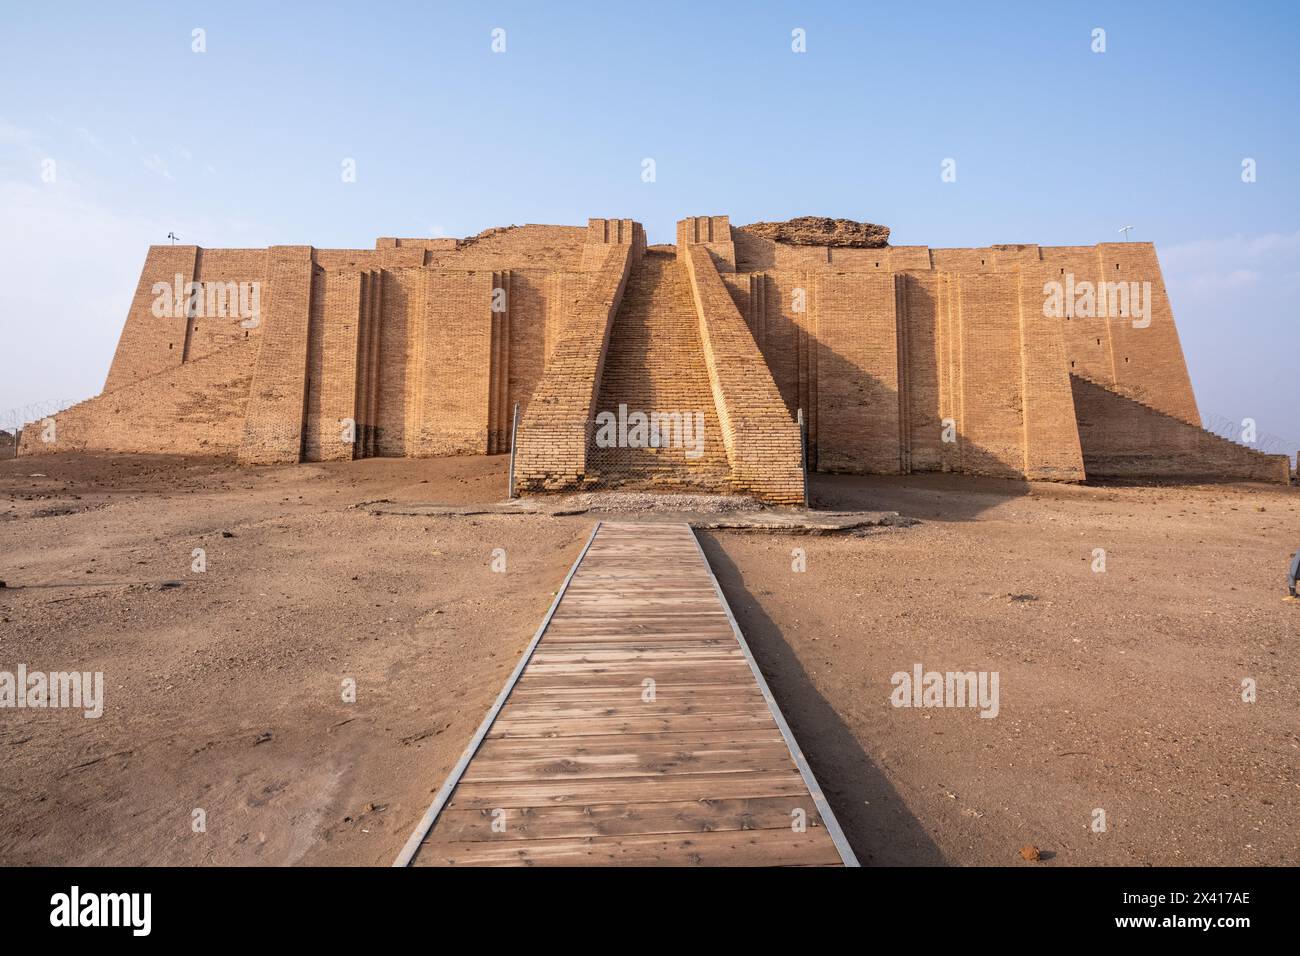 ziggourat de ur en irak Banque D'Images